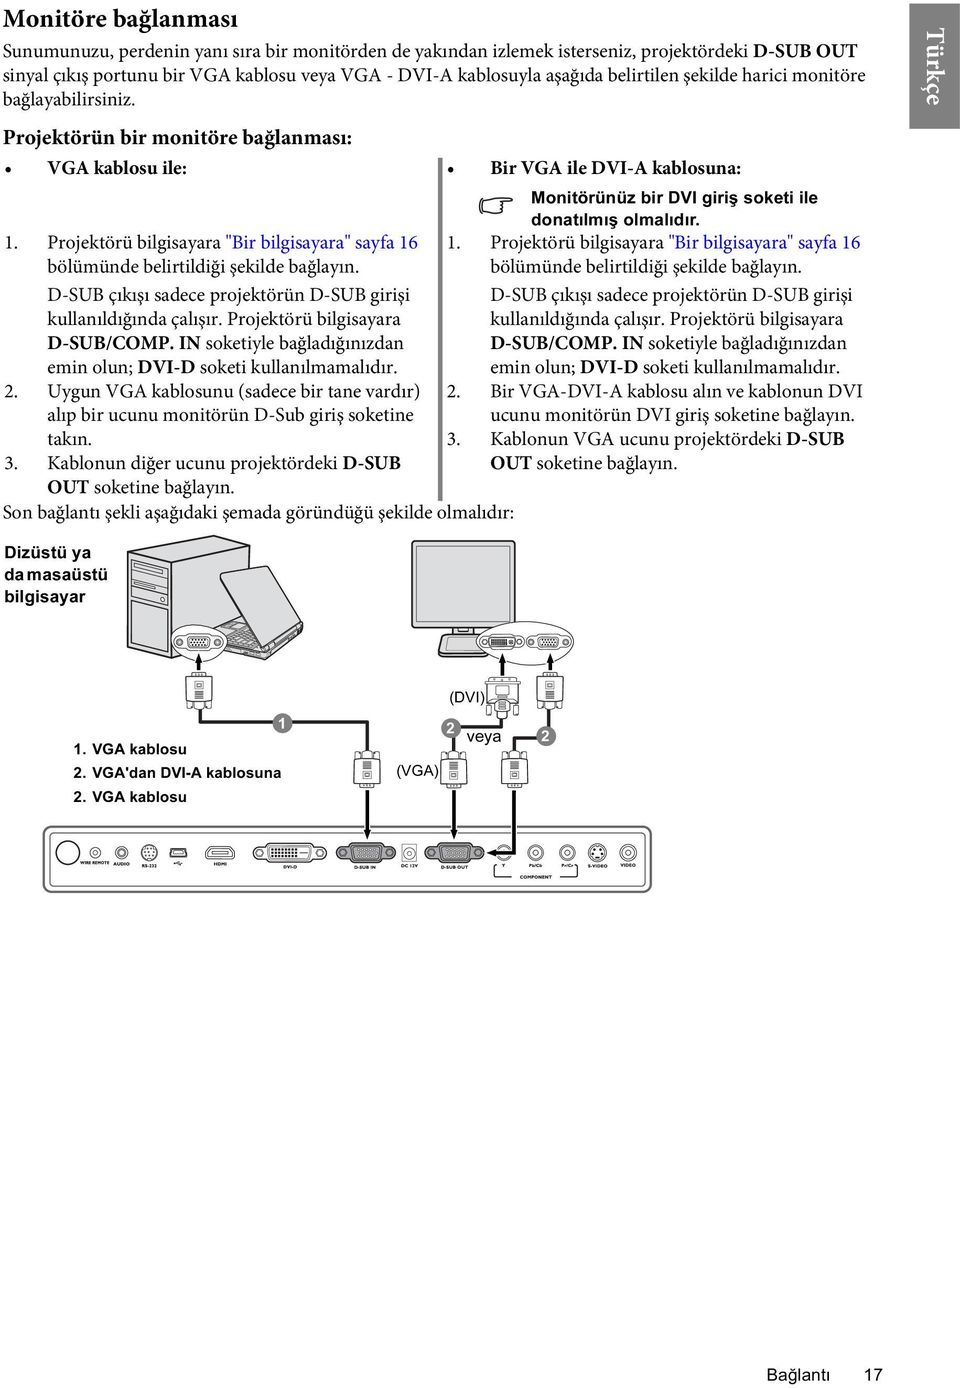 Projektörü bilgisayara "Bir bilgisayara" sayfa 16 1. Projektörü bilgisayara "Bir bilgisayara" sayfa 16 bölümünde belirtildiği şekilde bağlayın.